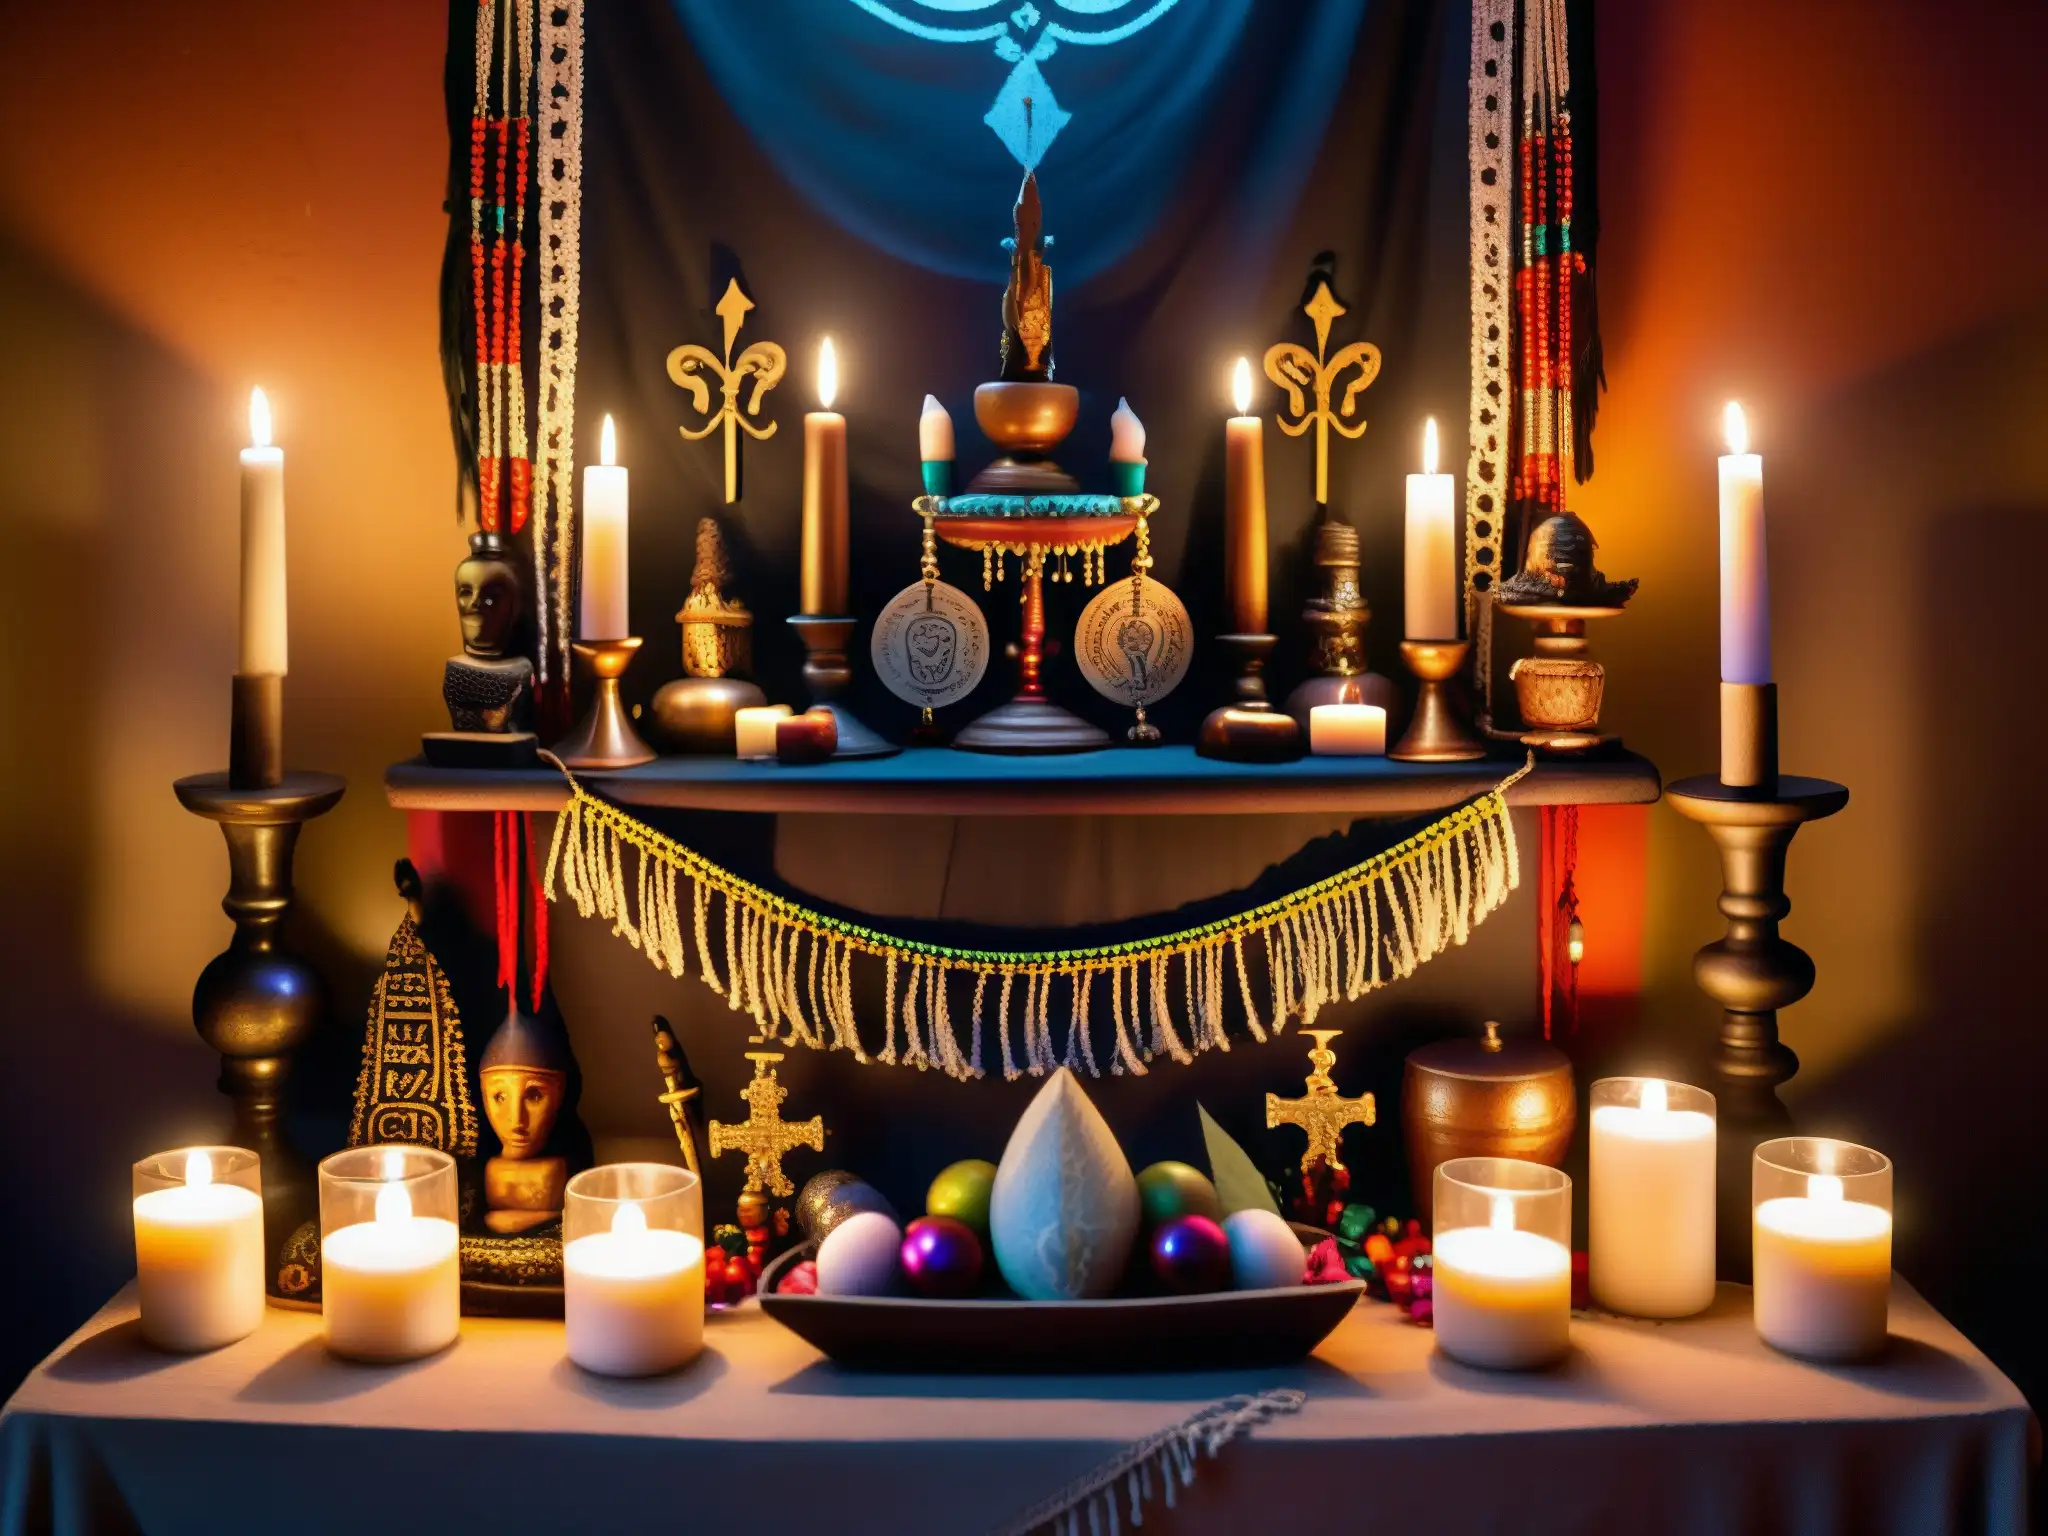 Un altar vudú en Nueva Orleans, decorado con símbolos místicos, velas titilantes y ofrendas coloridas, emana misterio y tradición antigua